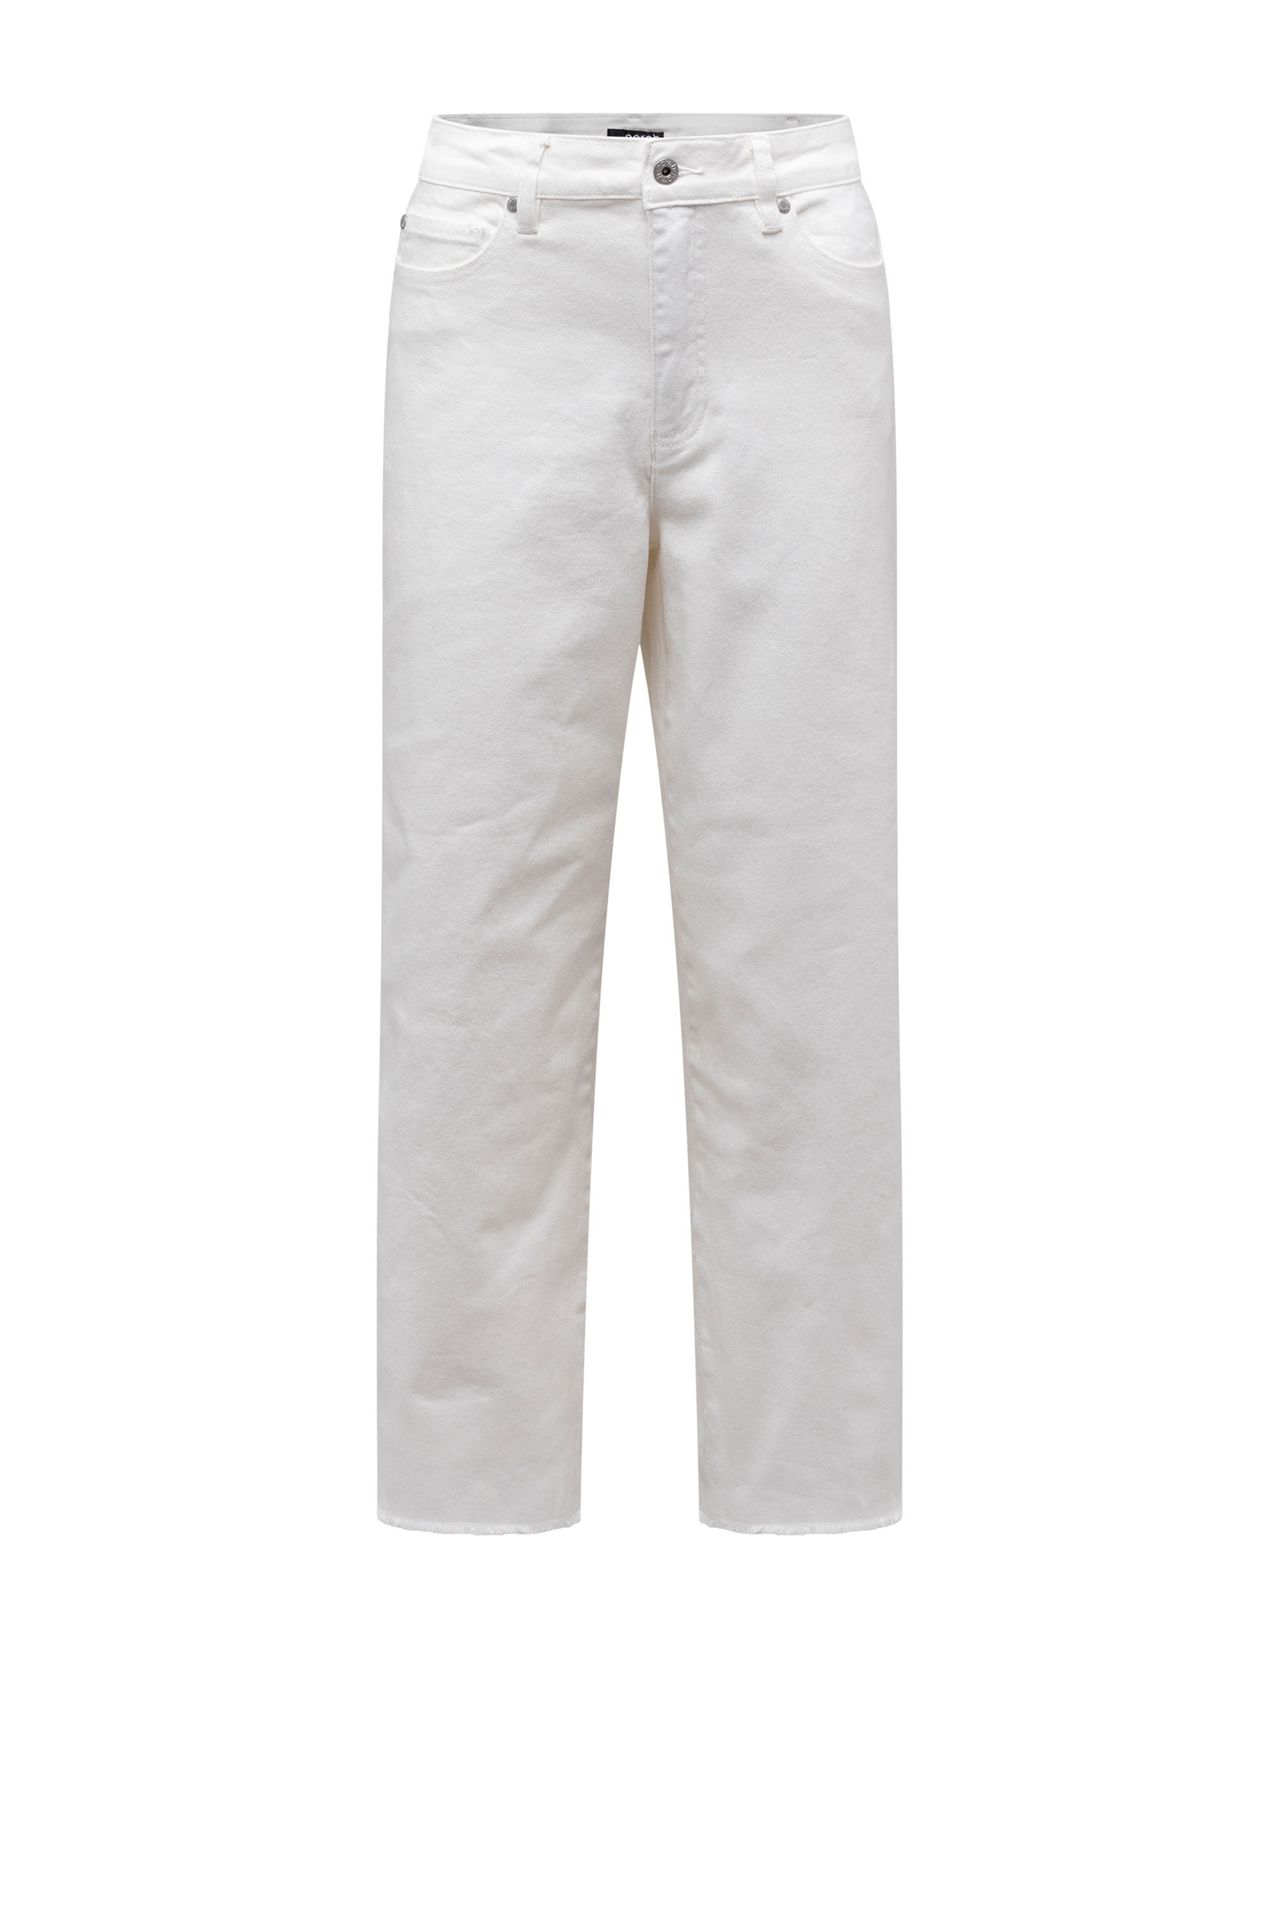  Witte spijkerbroek van katoenmix off-white 213449-101-46